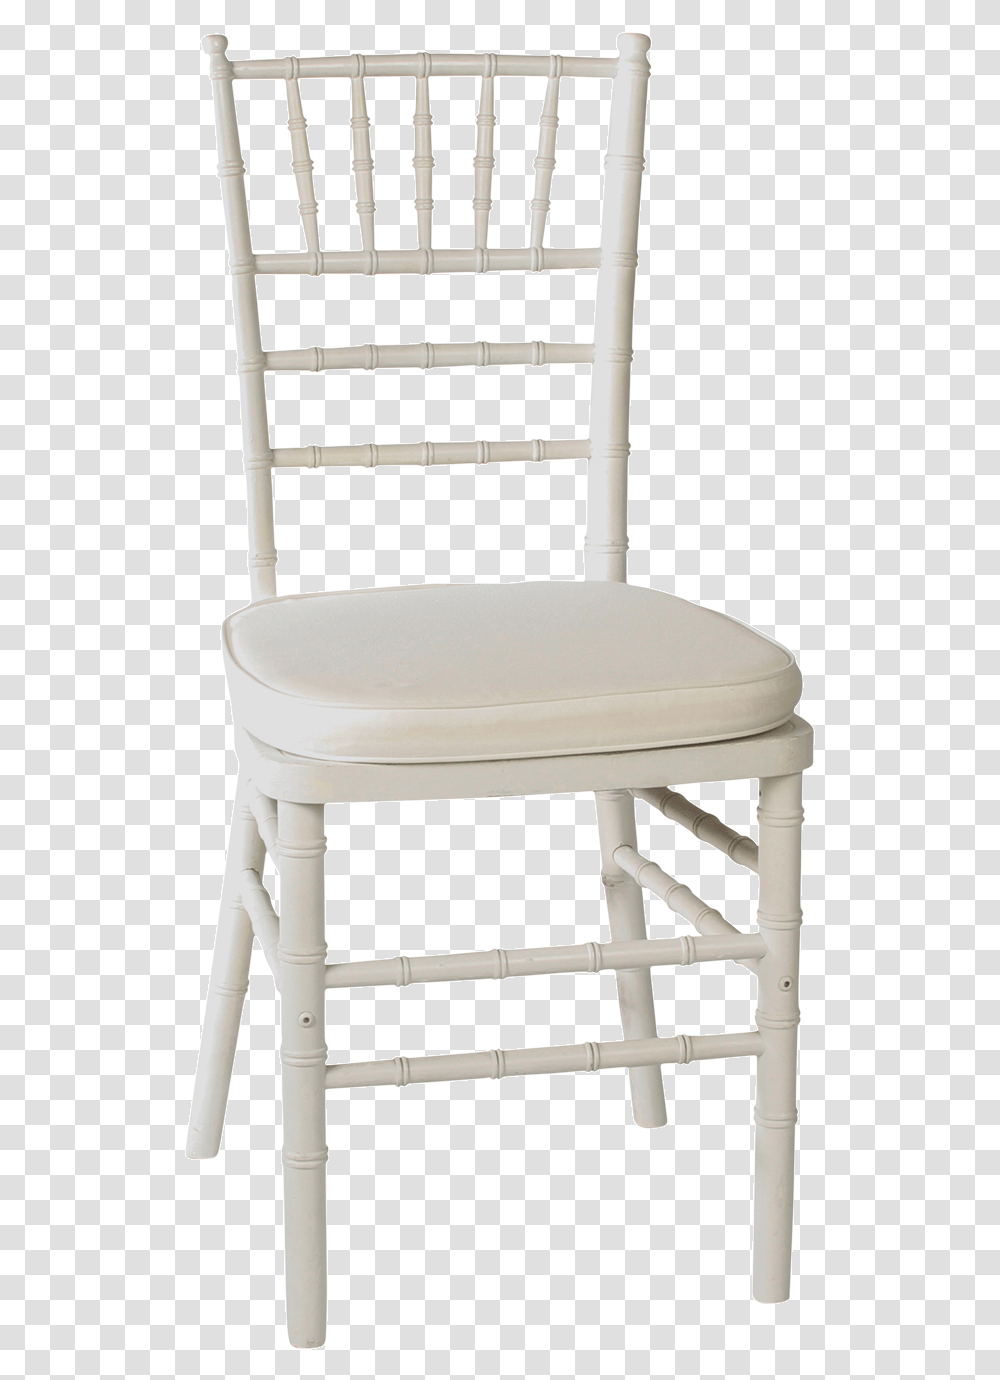 Wooden Chiavari Chair, Furniture, Rocking Chair, Cushion Transparent Png